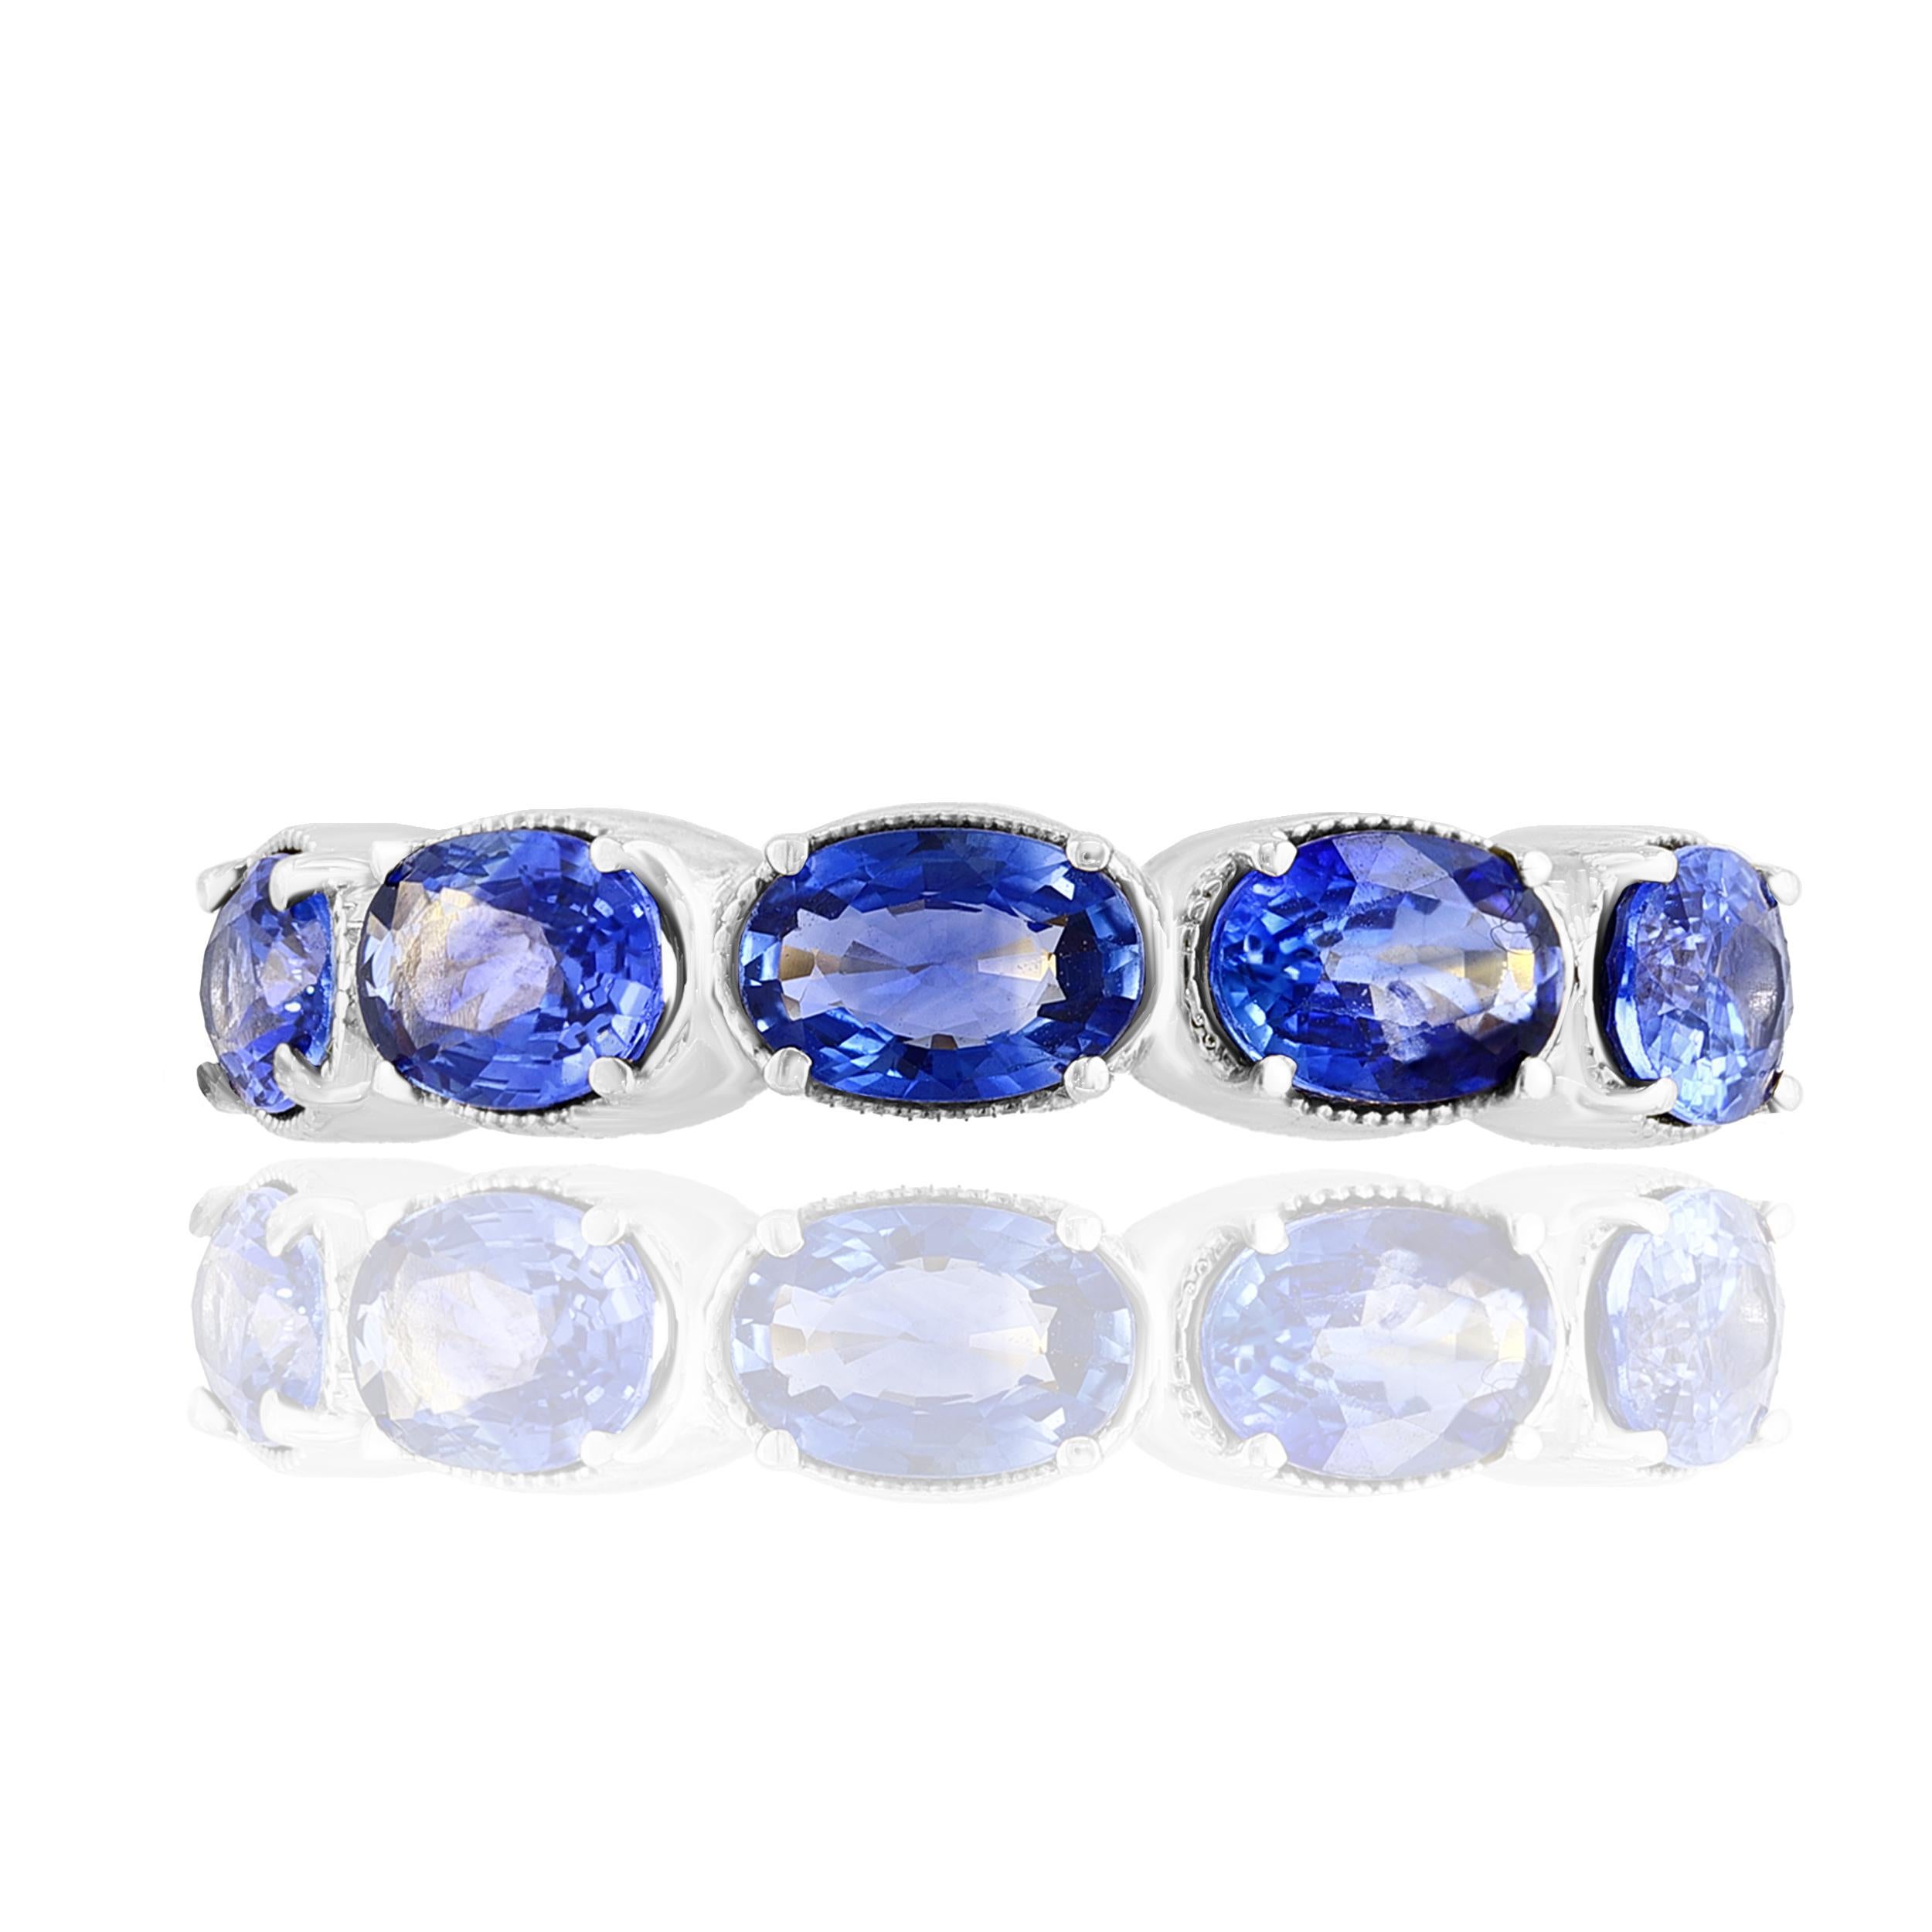 Ein modischer und klassischer Ehering mit 5 farbintensiven blauen Saphiren von insgesamt 2,76 Karat. Die Steine sind mit einer 4-Zacken-Fassung aus 14 Karat Weißgold befestigt. Ein vielseitiges Stück, das auch als modischer Ring für die rechte Hand